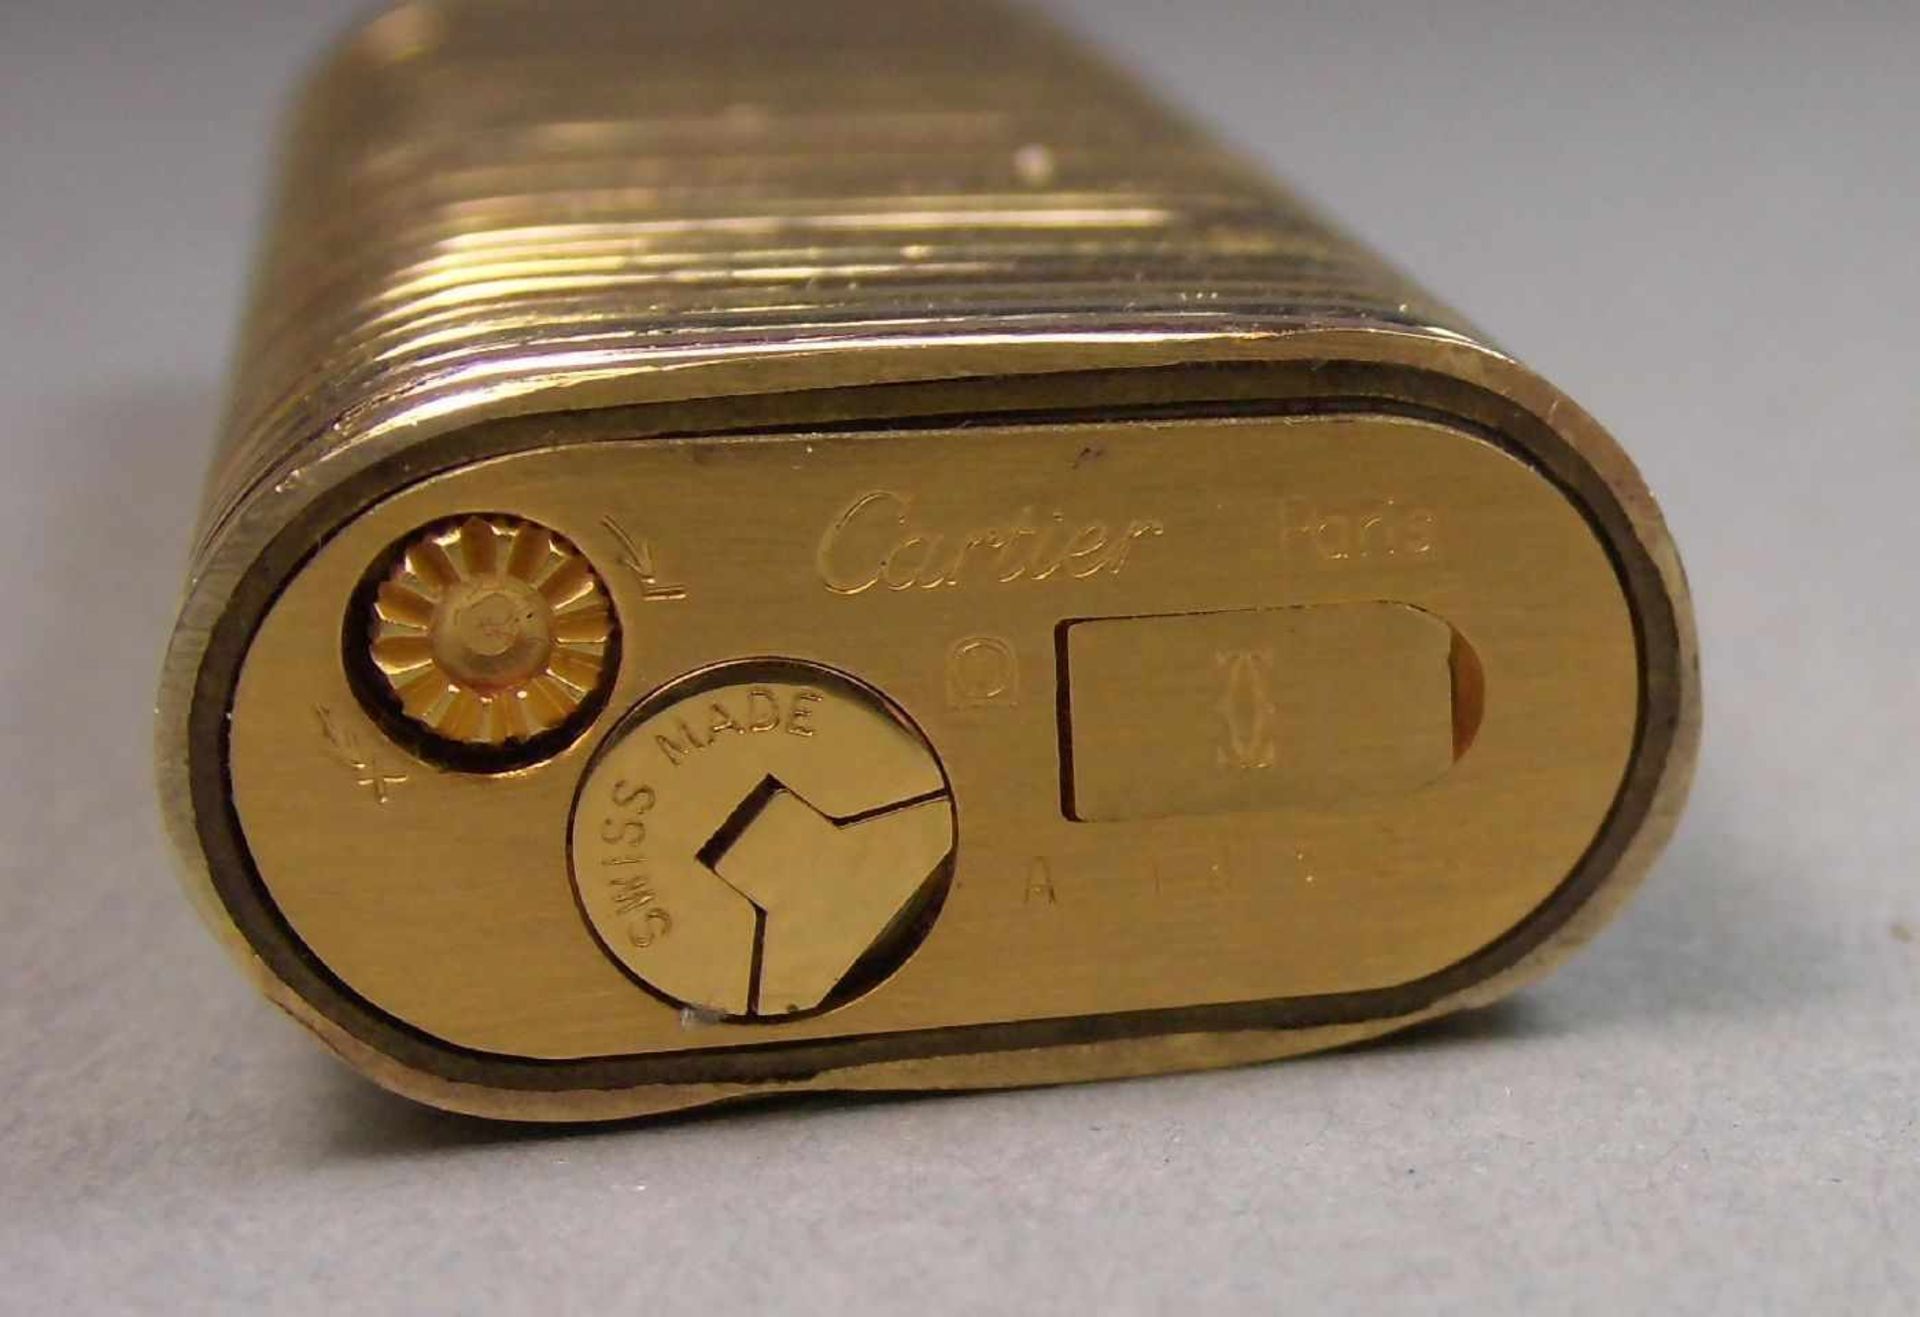 CARTIER FEUERZEUG / lighter, Gold (750er, 92 g), Frankreich, unter dem Stand Firmenstempel " Cartier - Image 4 of 4